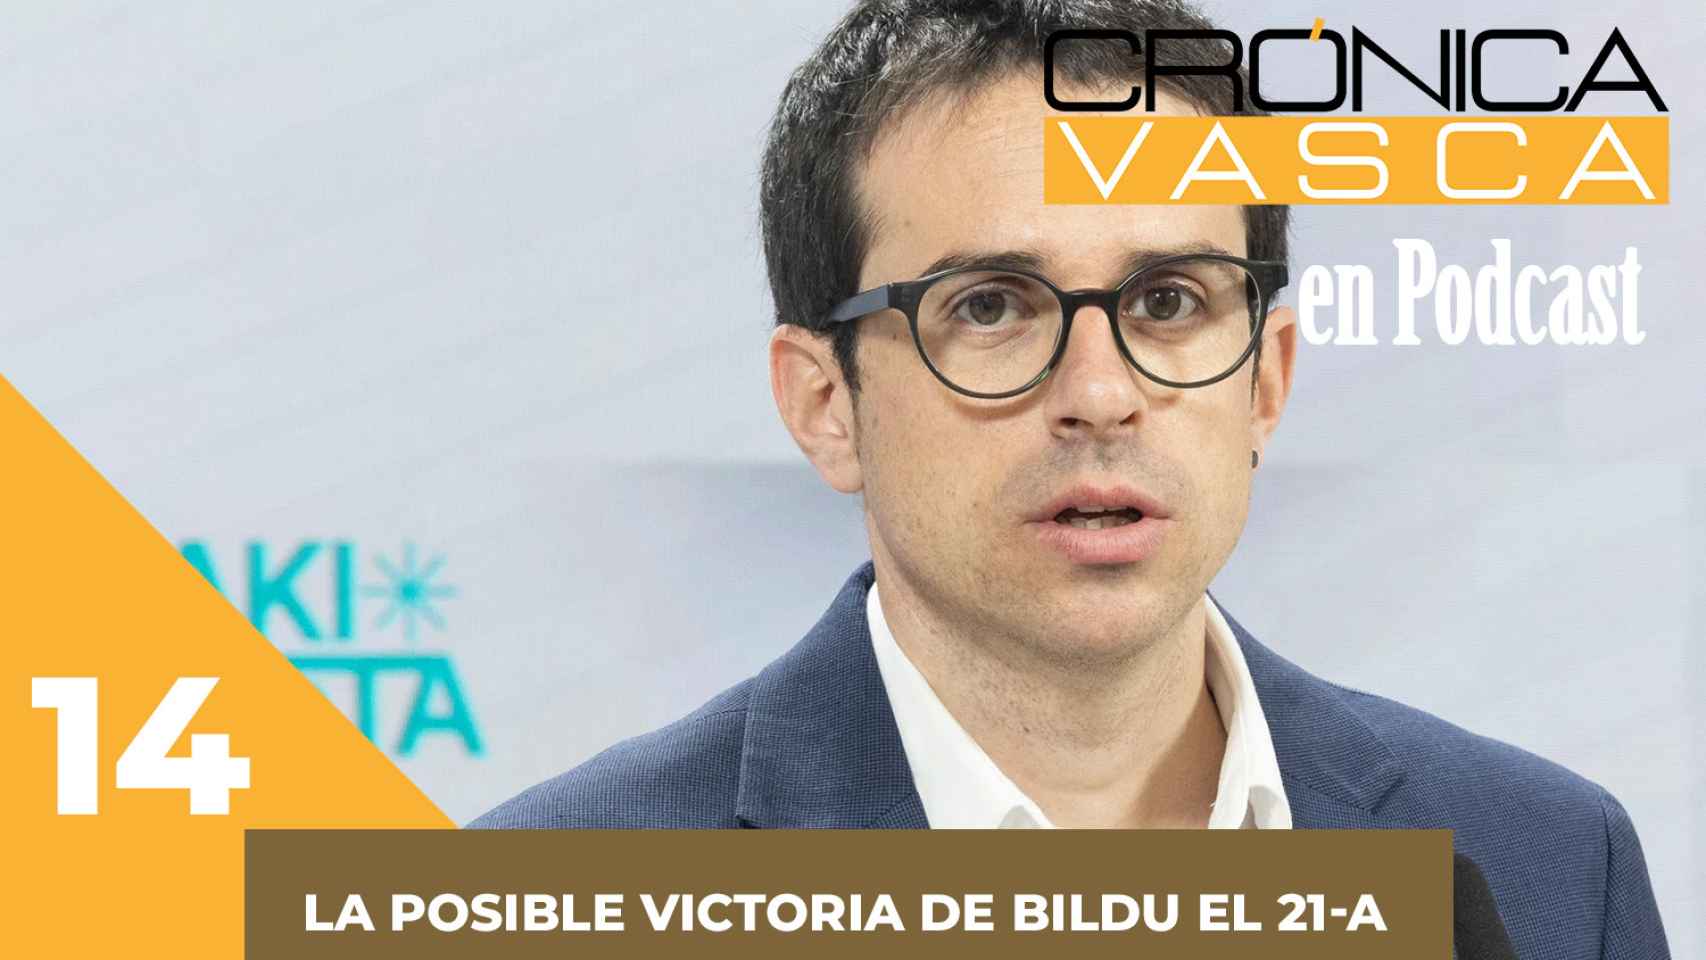 Las elecciones vascas que Bildu puede ganar